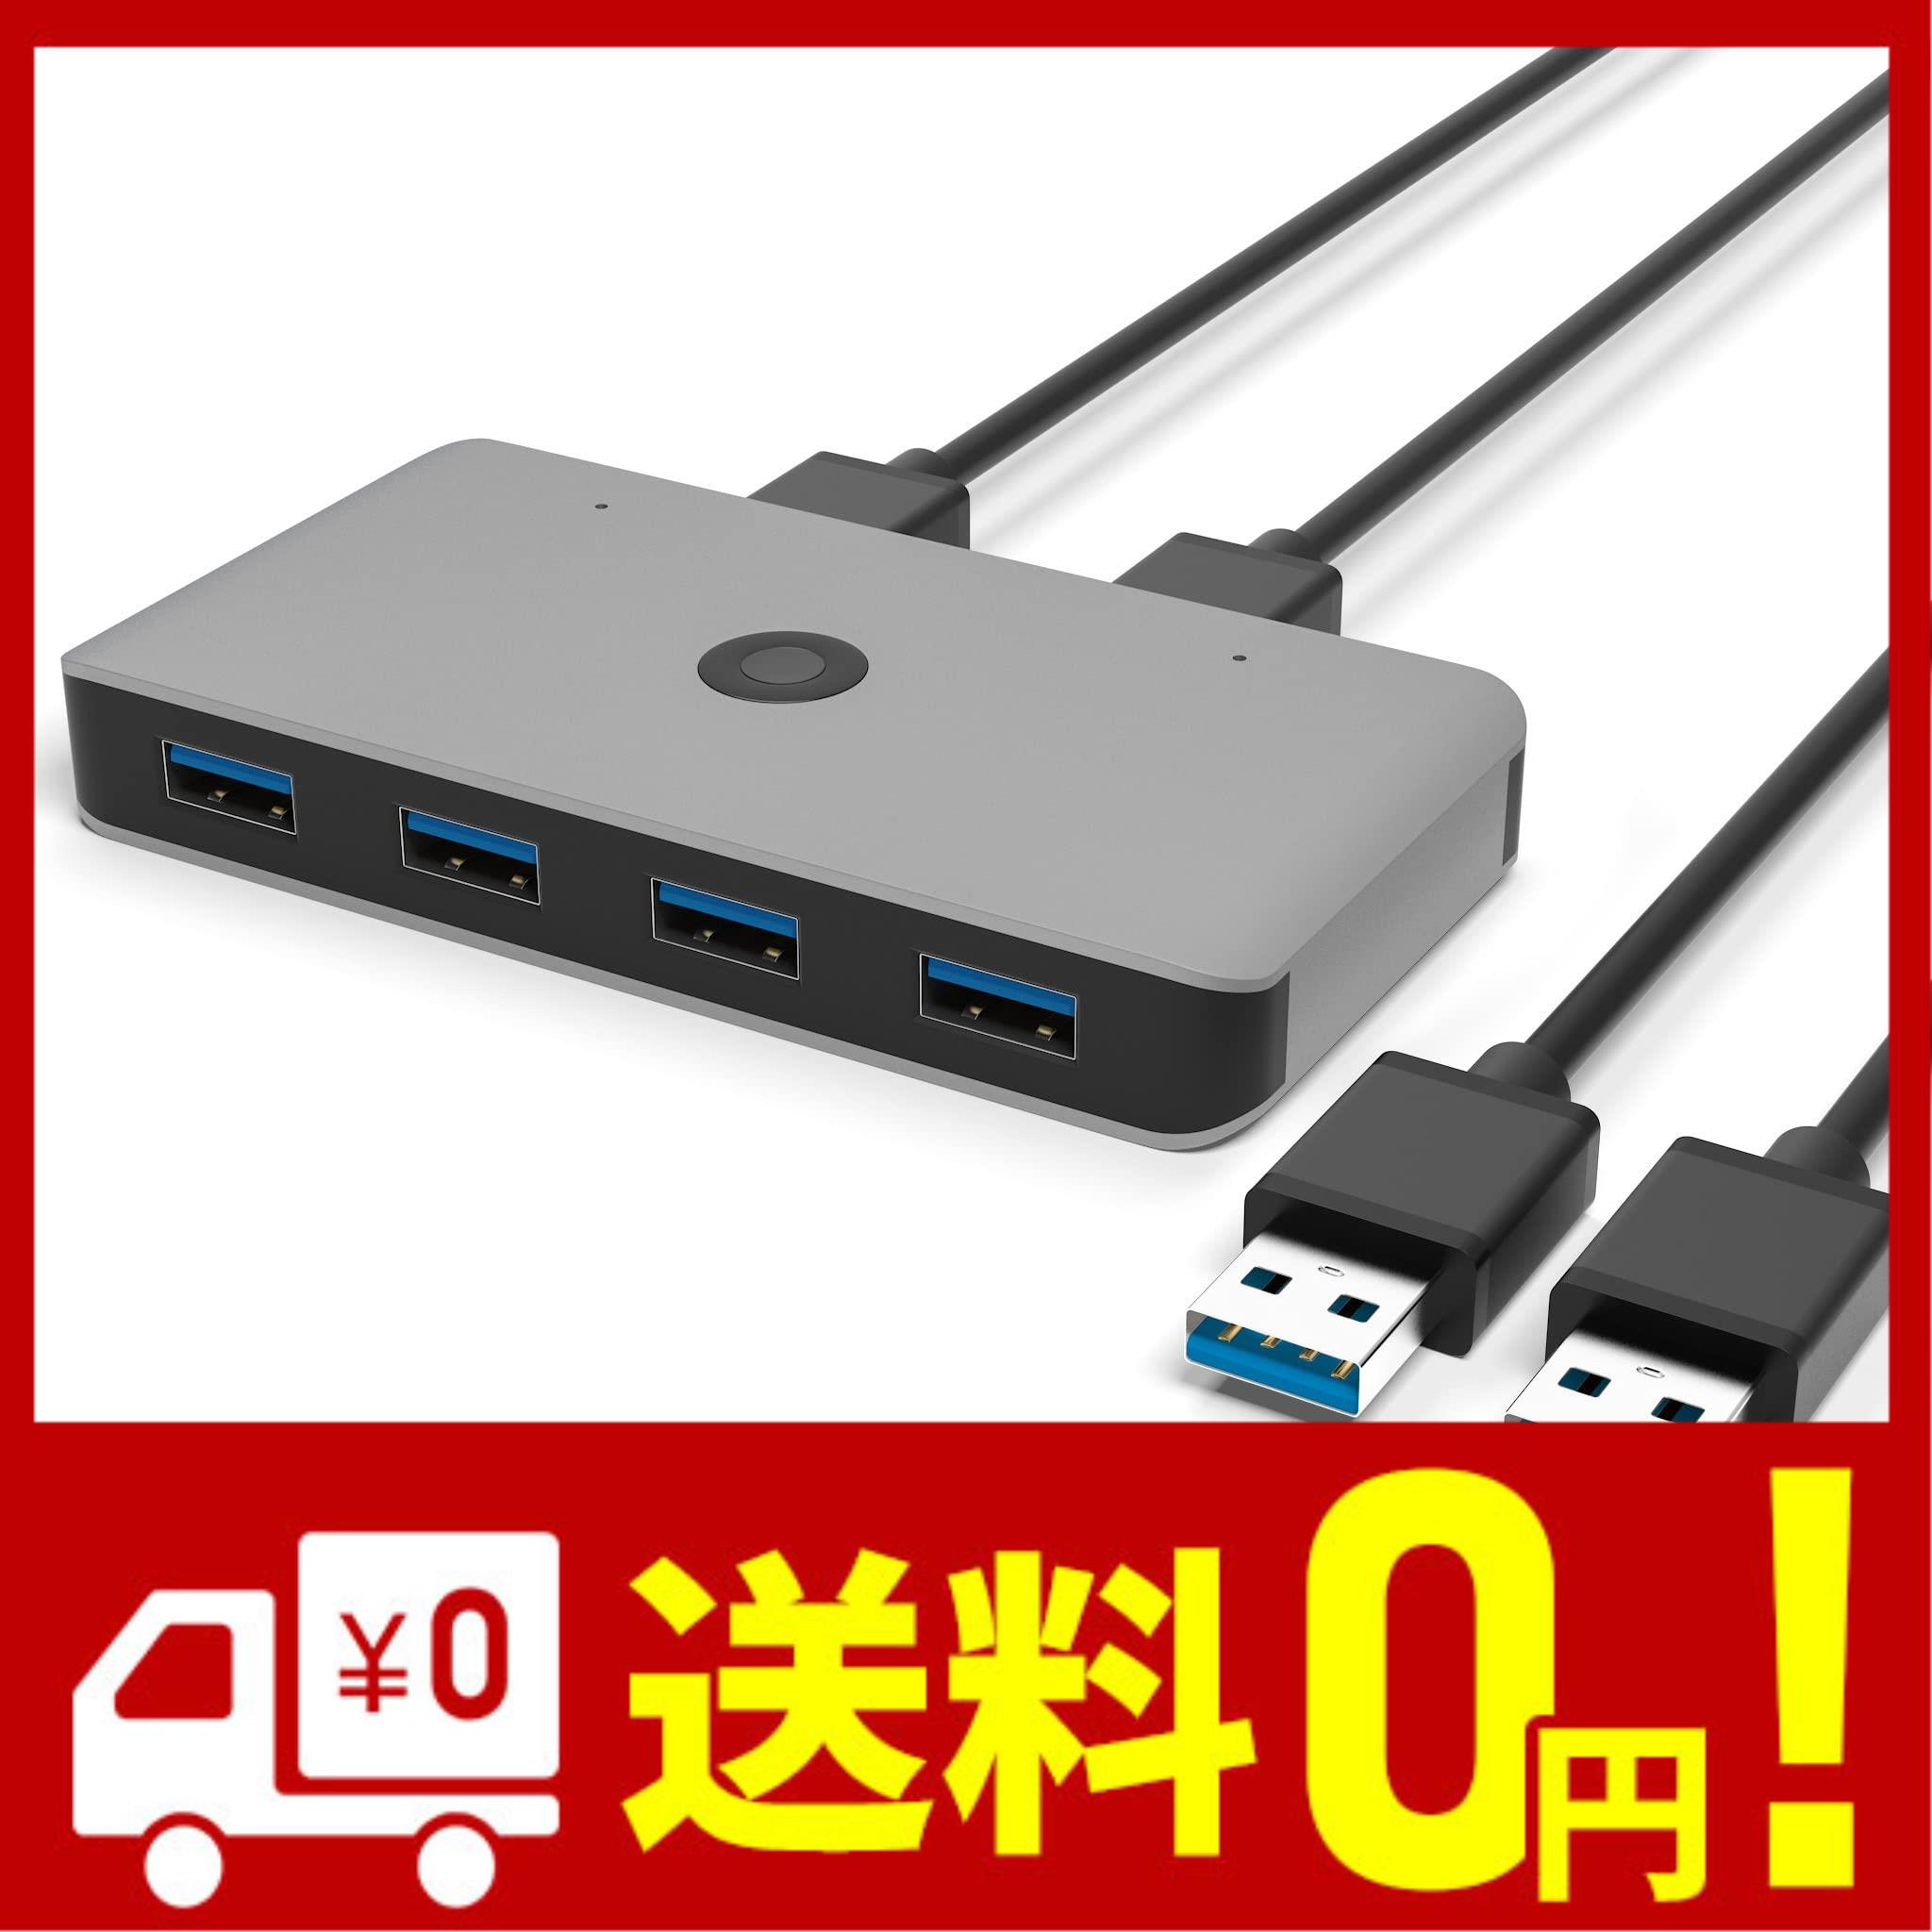 USB切替器 Anikks USB3.0 高速転送 USB 切り替え PC2台用 セレクター スイッチ プリンタ マウス ハブ キーボード切替機 usb 切替 手動 1.